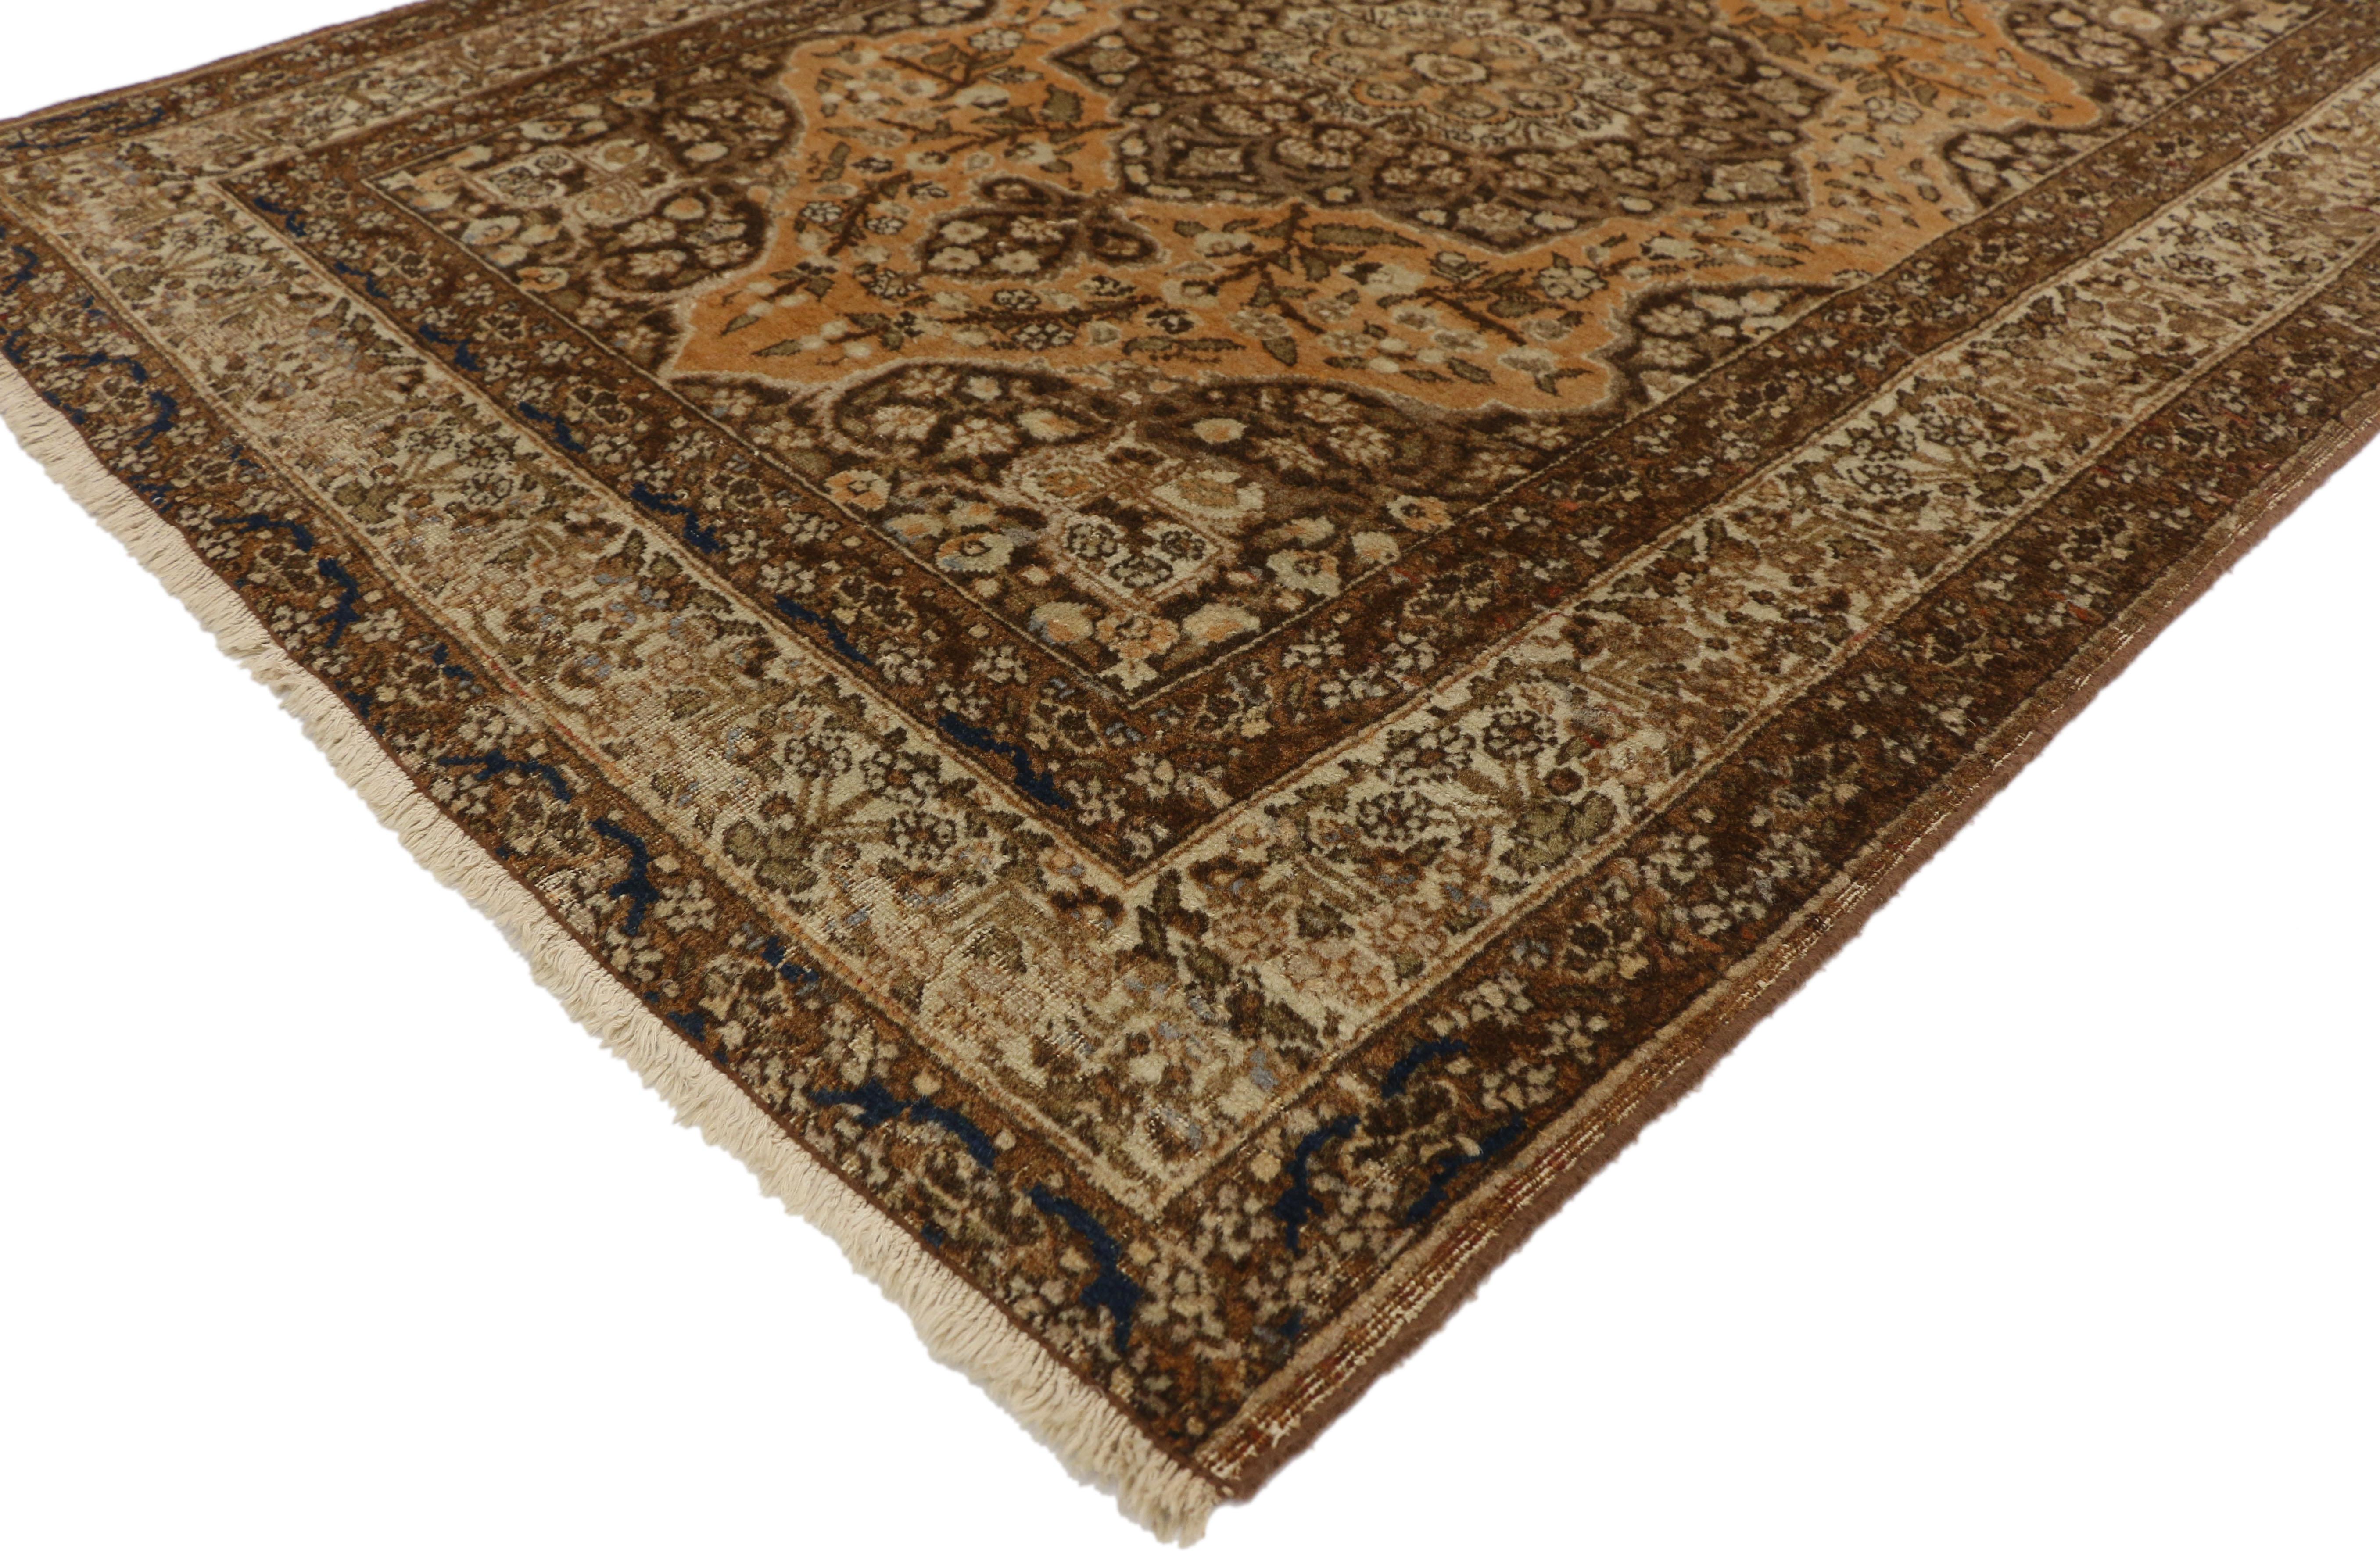 73430, alter persischer Täbris-Teppich im toskanischen Handwerksstil. Dieser handgeknüpfte Teppich aus alter persischer Tabriz-Wolle zeichnet sich durch ein zentrales Medaillon mit Höckern aus, das auf beiden Seiten von Kleeblättern und Blumen auf